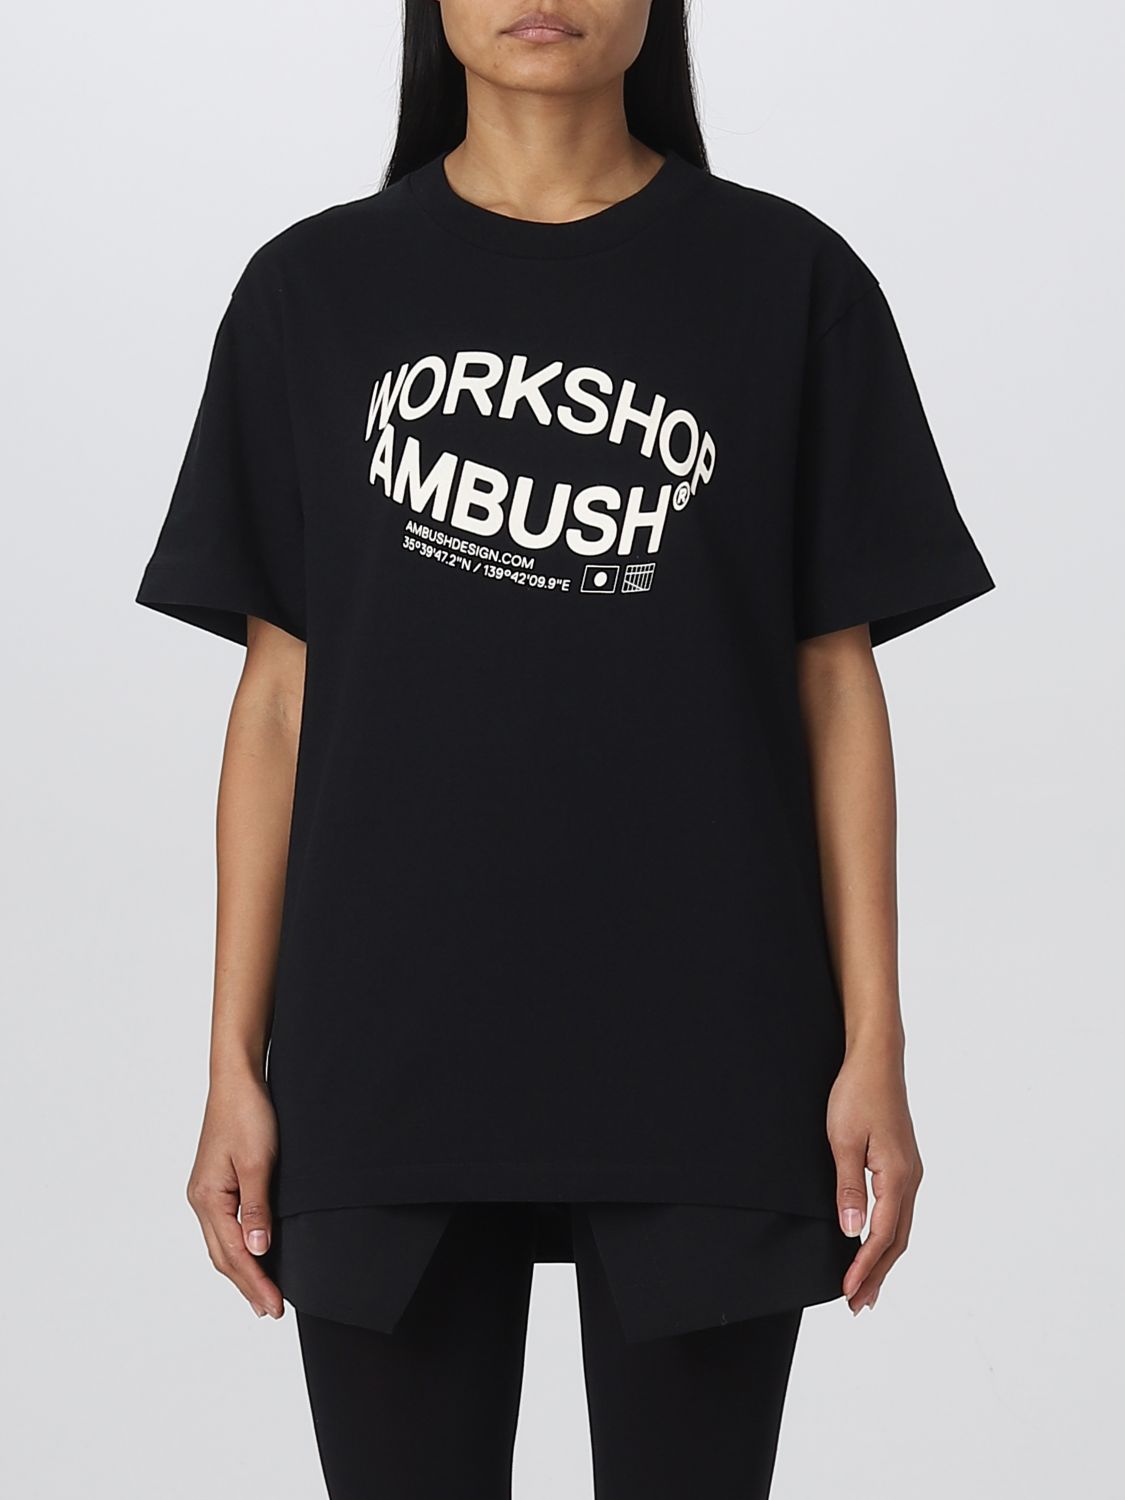 Ambush Black Revolve T-shirt